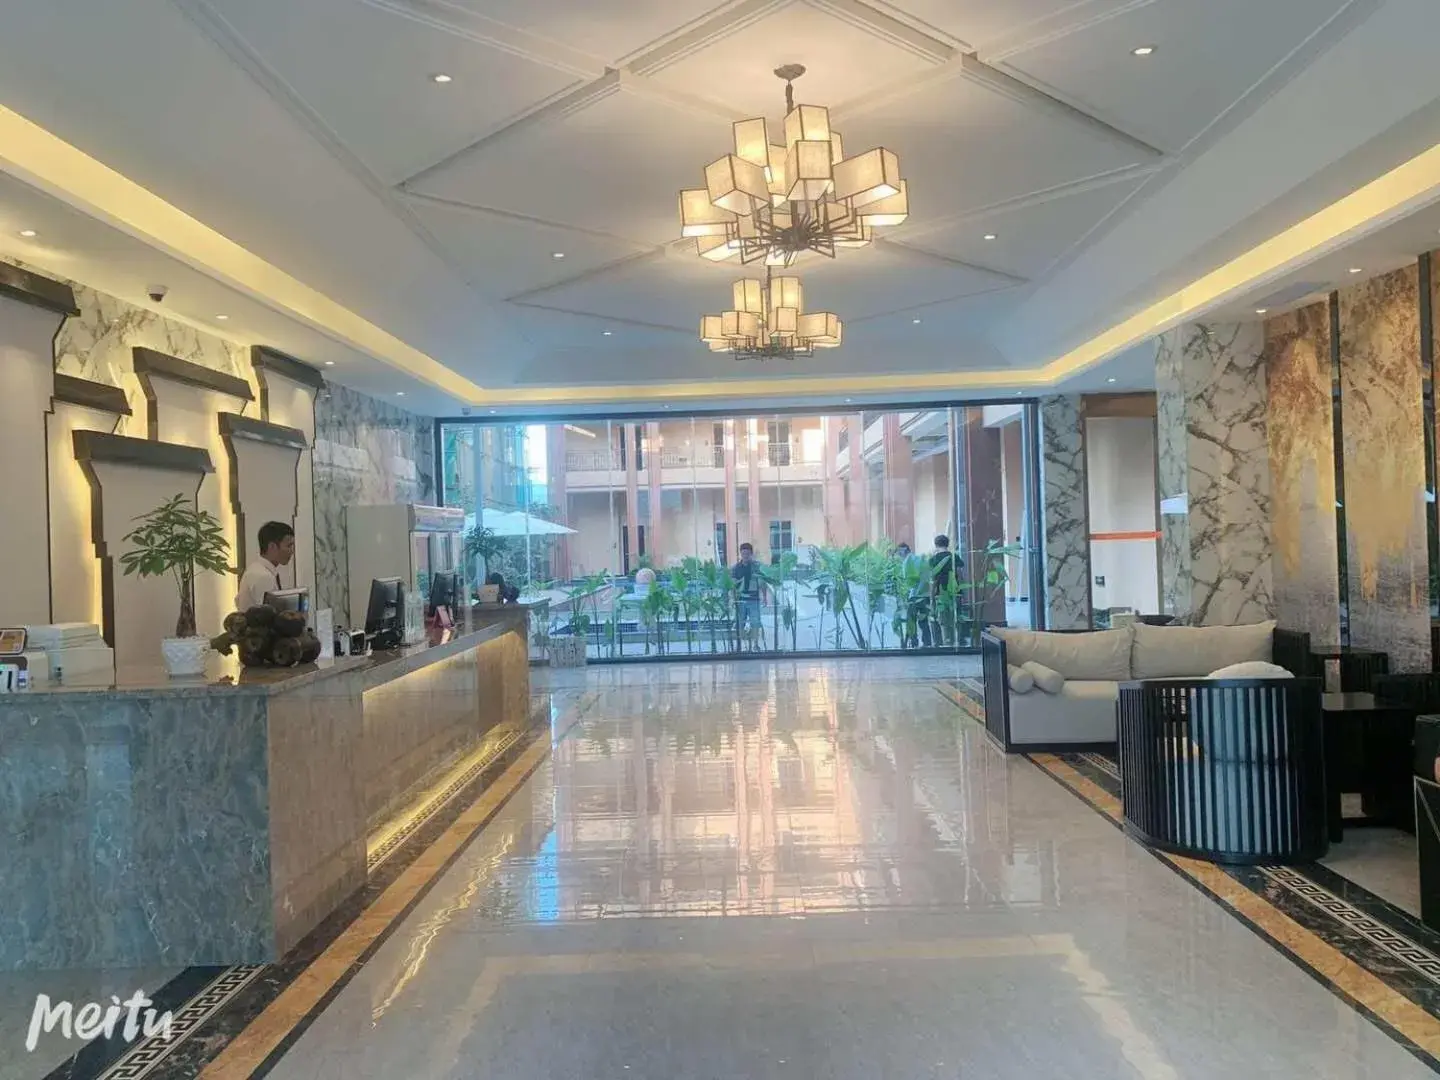 Lobby or reception, Lobby/Reception in Le Chen Miiya Hotel